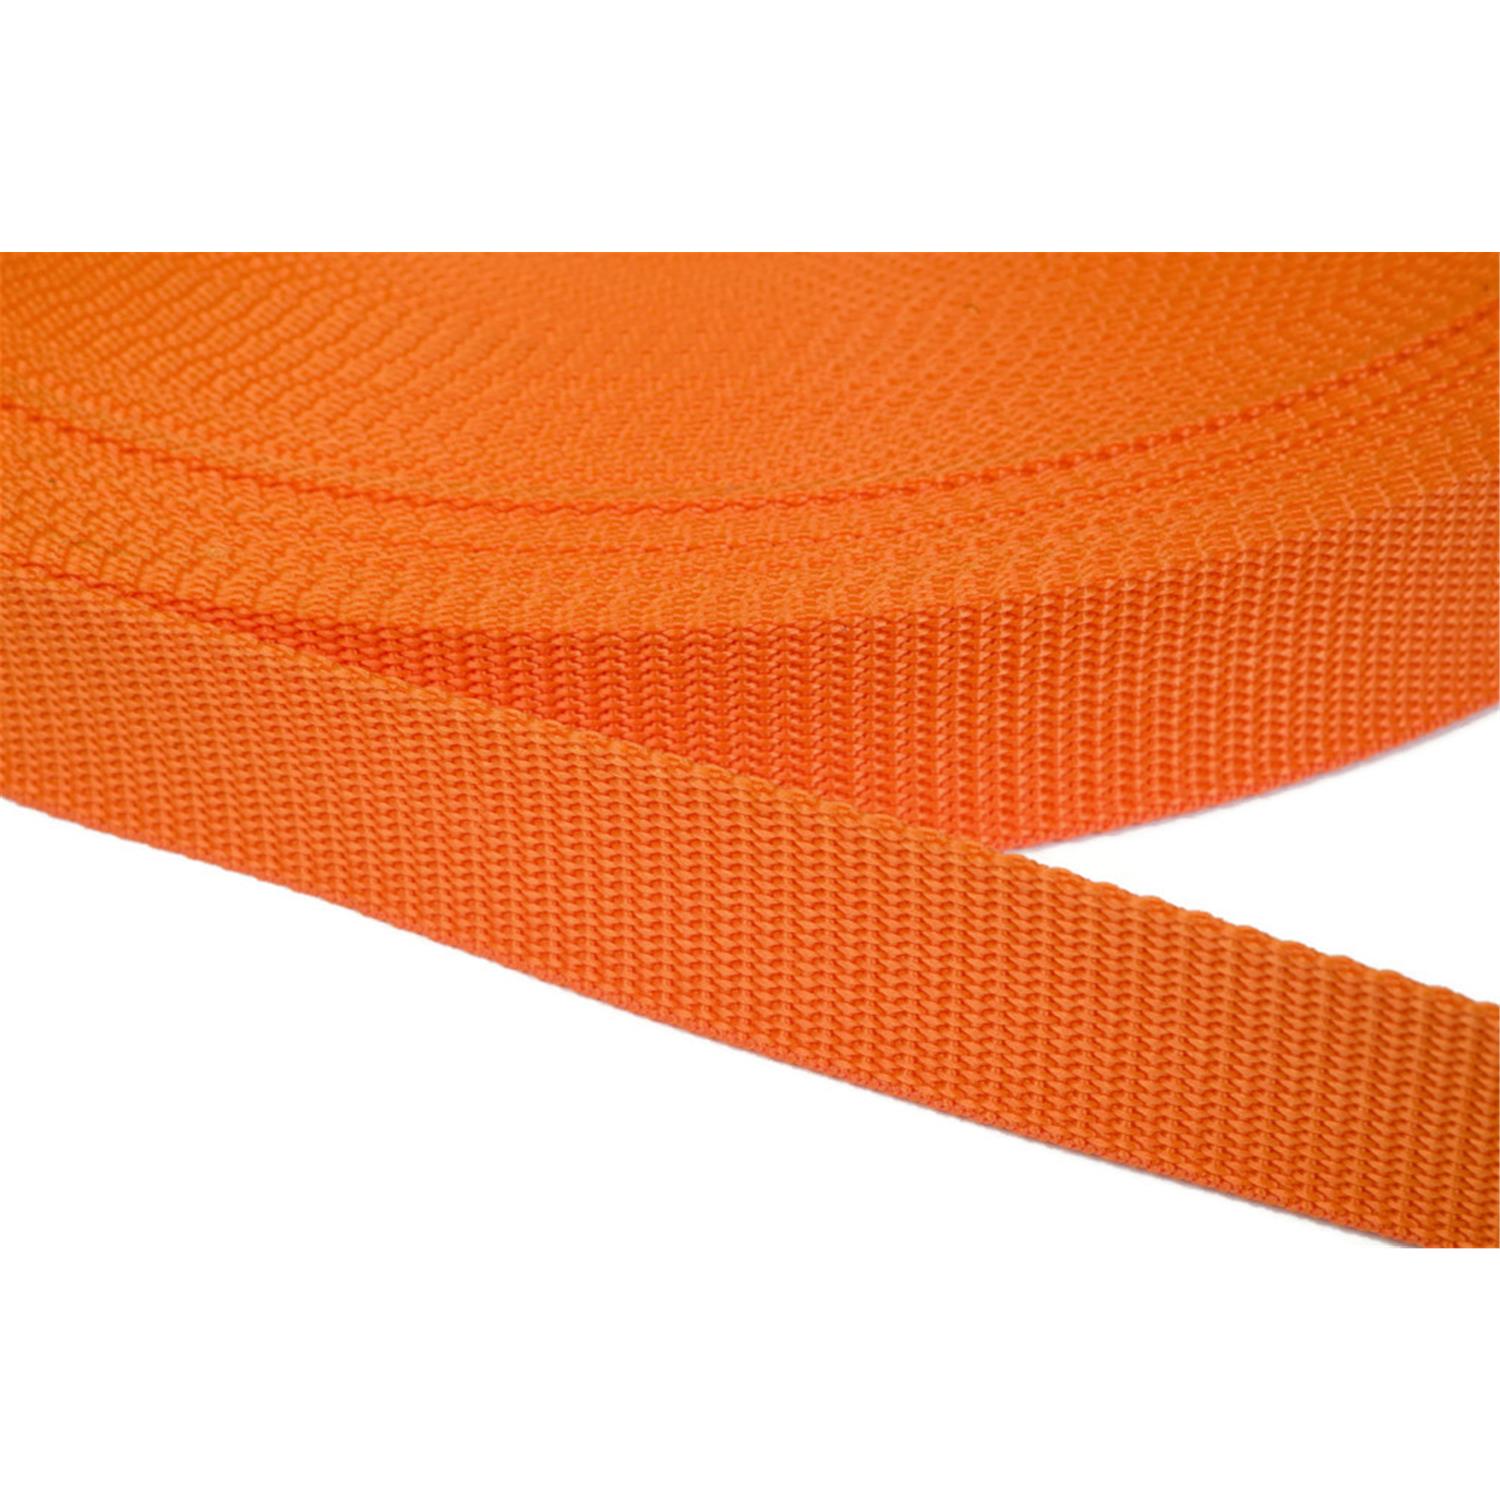 Gurtband 25mm breit aus Polypropylen in 41 Farben 11 - orange 6 Meter